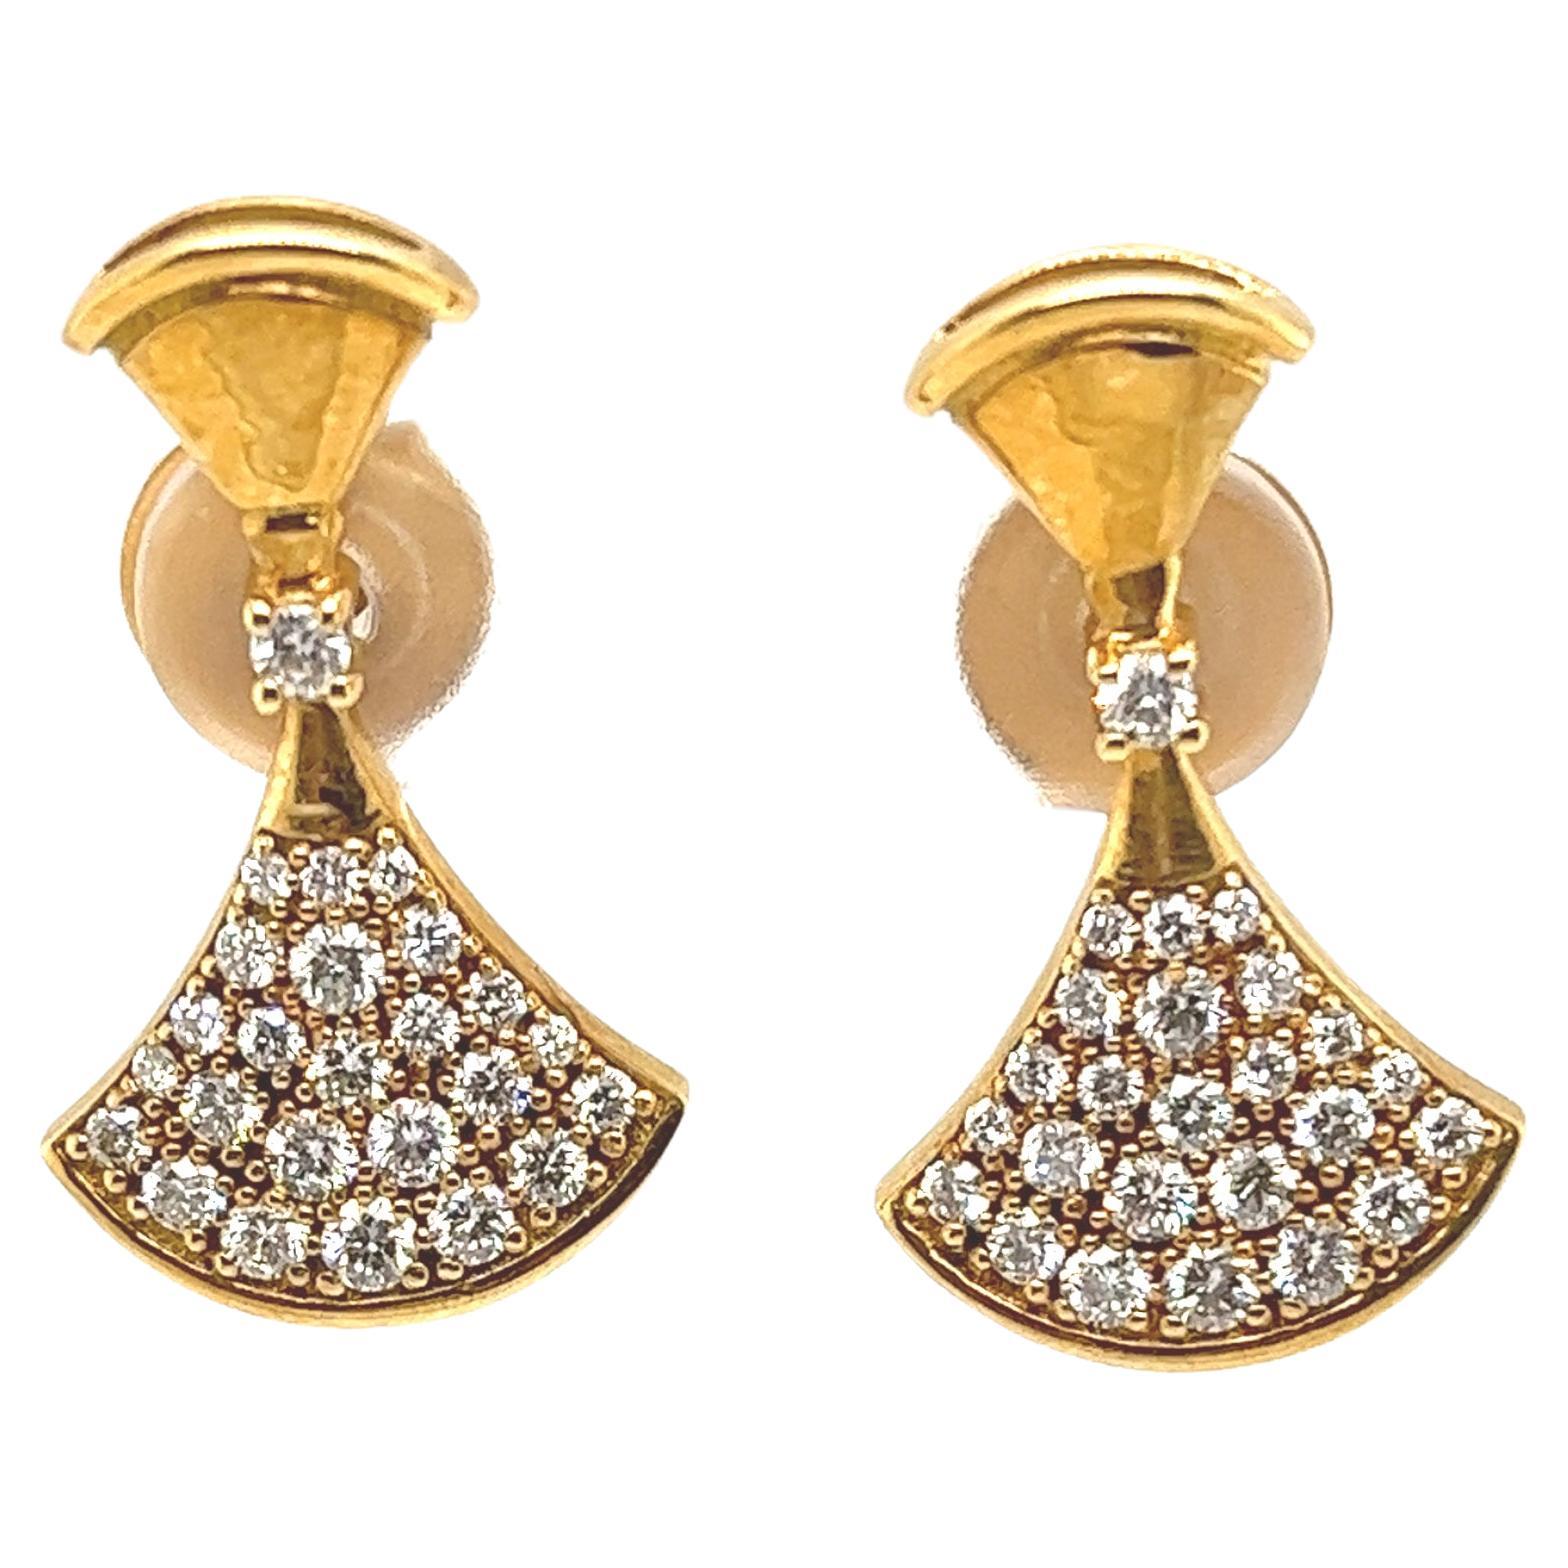 Fine Quality Fan Shape Diamond Earrings in 18ct Yellow Gold